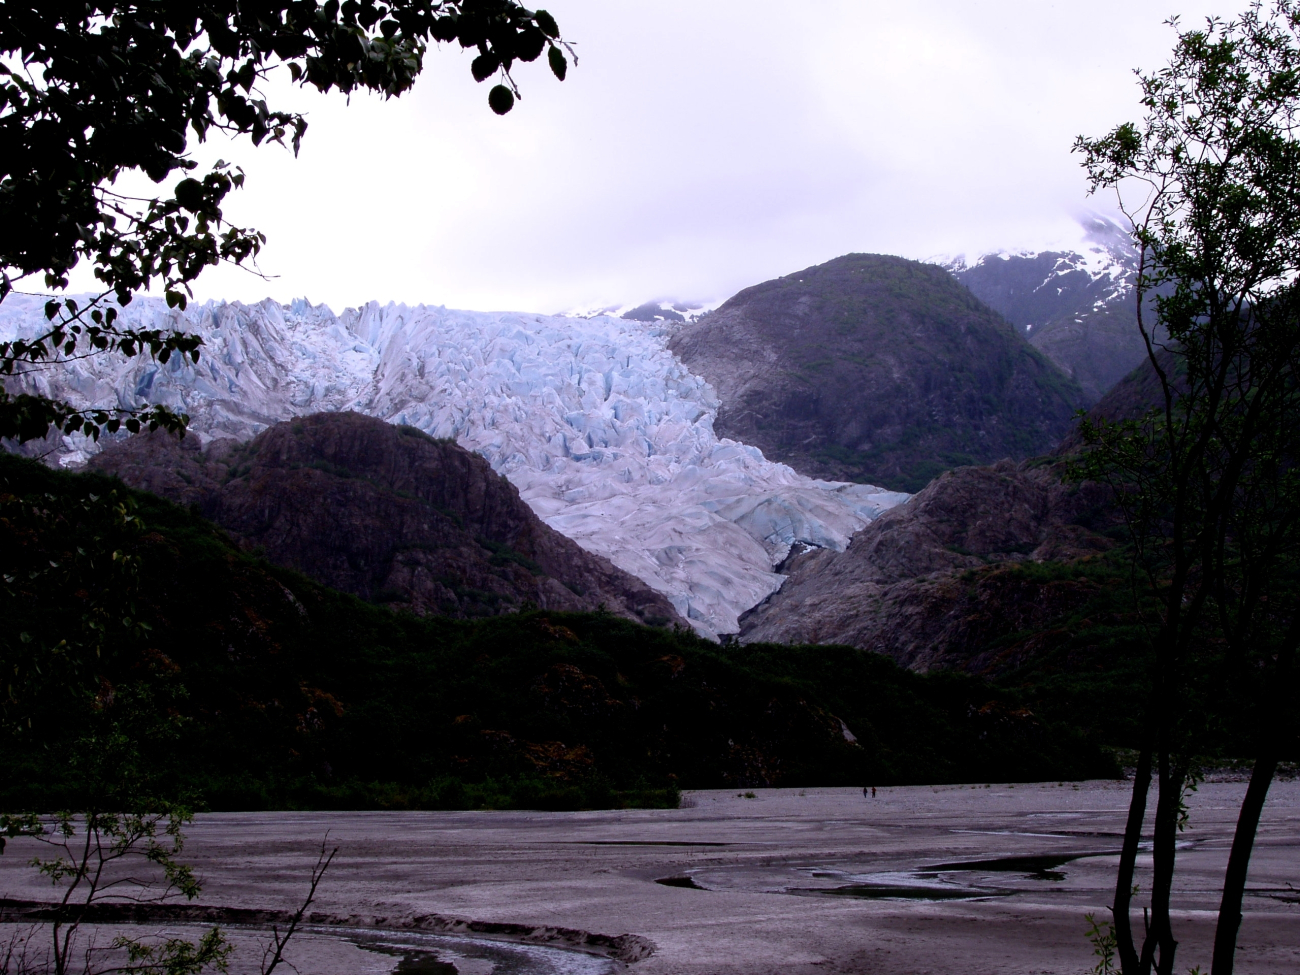 The terminus of Herbert Glacier